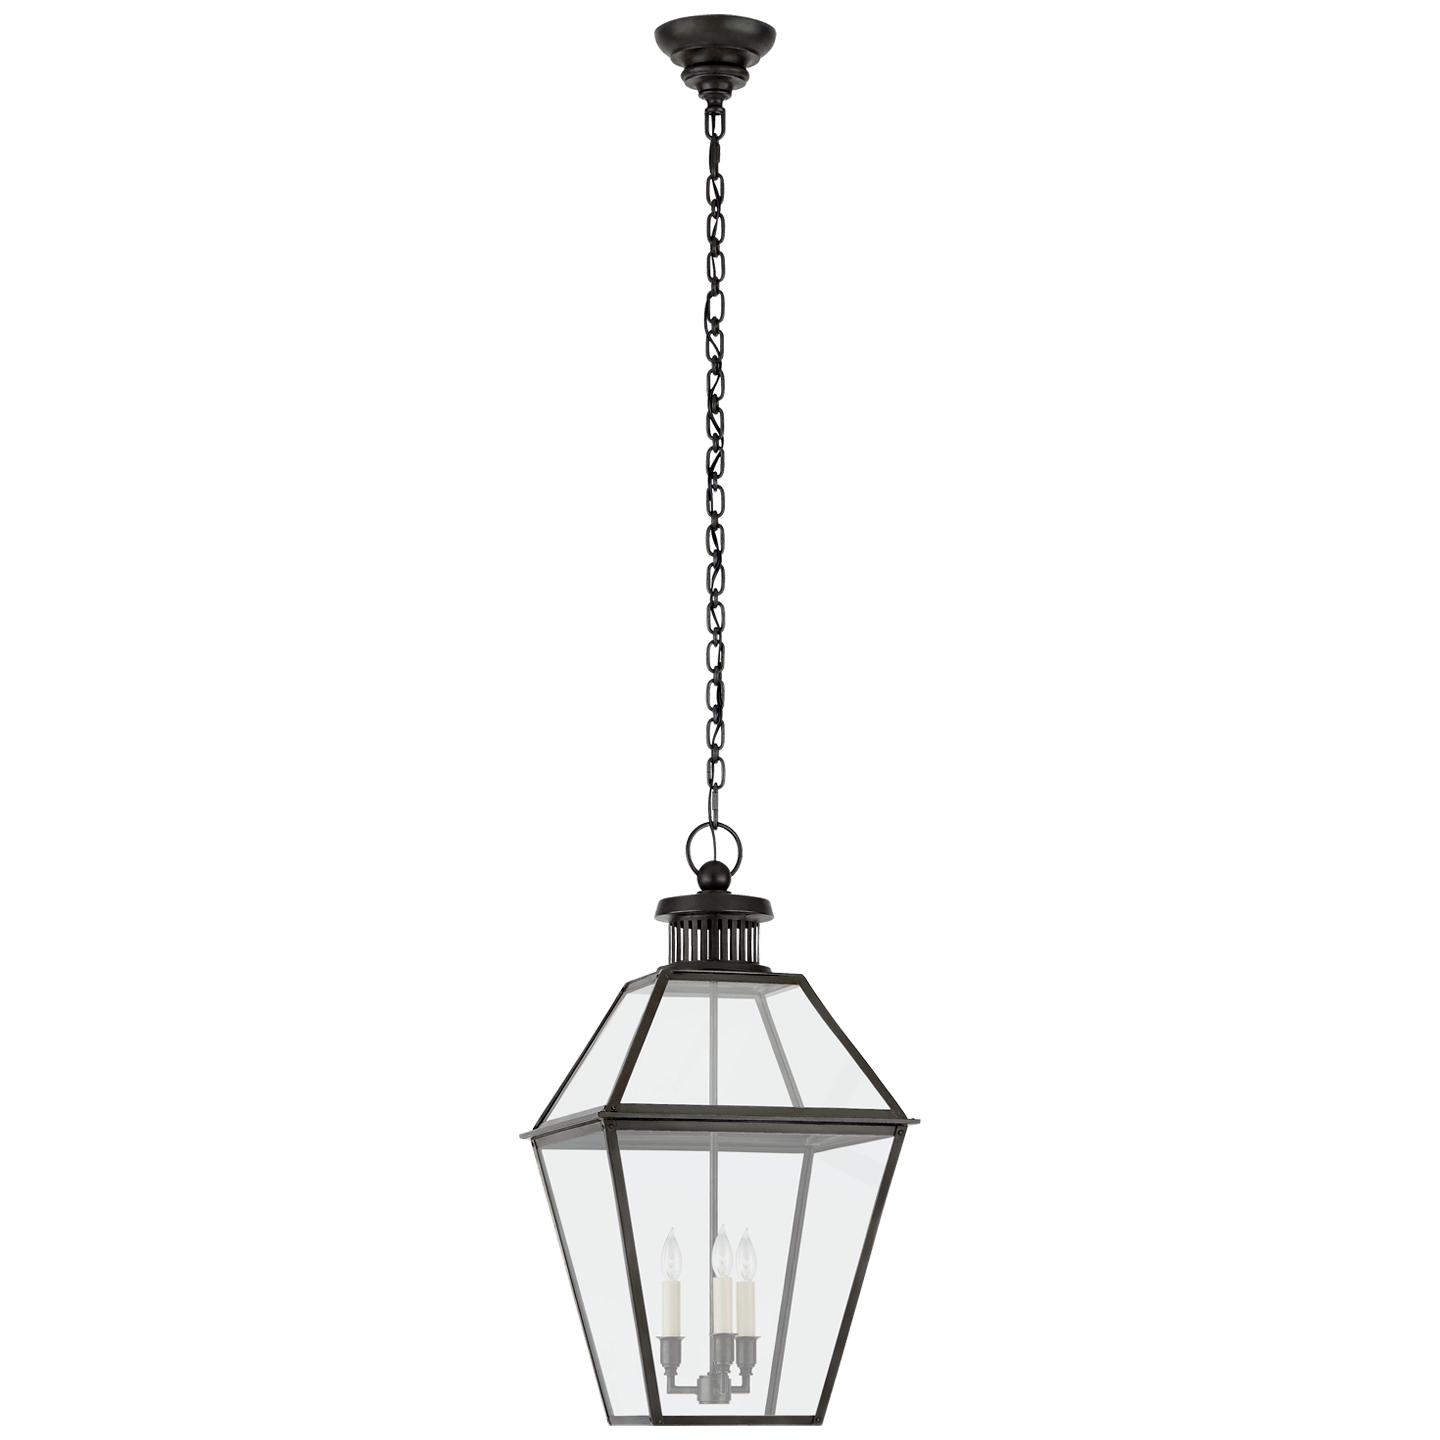 Купить Подвесной светильник Stratford Medium Hanging Lantern в интернет-магазине roooms.ru